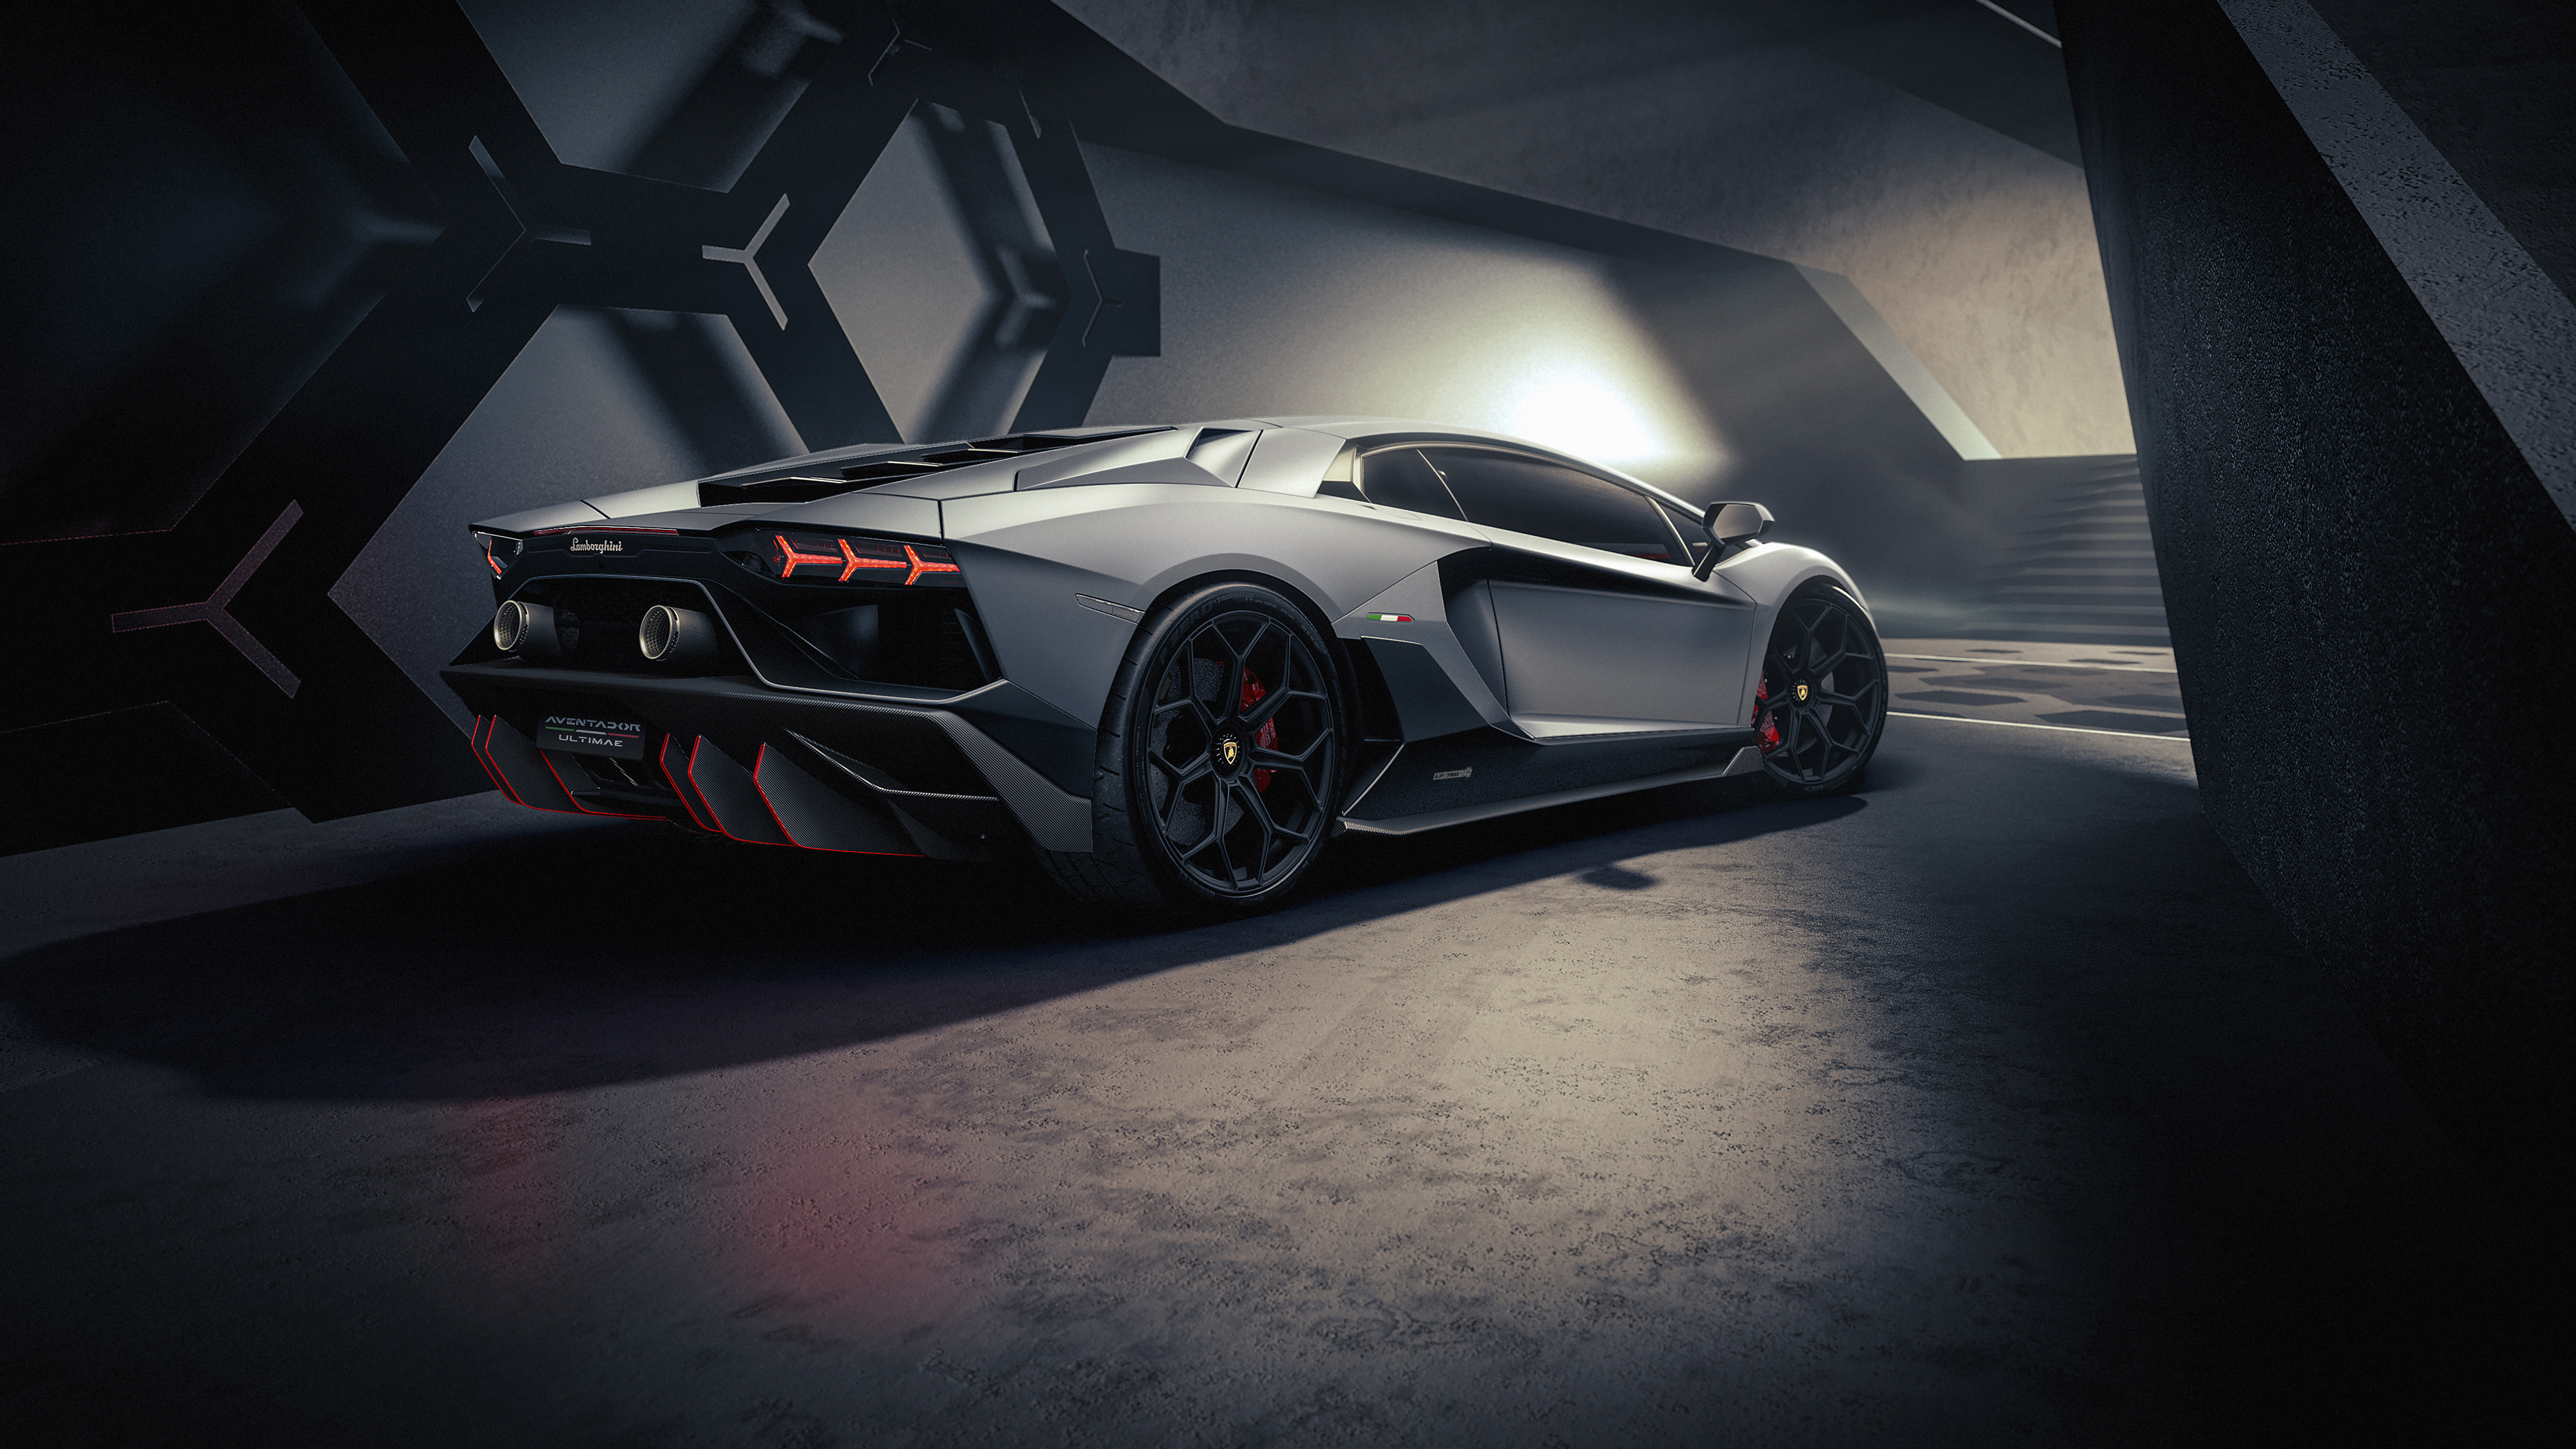 Xe Lamborghini (Lamborghini car): Bạn có muốn cảm nhận cảm giác thú vị của một chiếc xe Lamborghini siêu sang, tốc độ cao? Với thiết kế bắt mắt, động cơ đầy sức mạnh và tiện nghi đẳng cấp hàng đầu, Lamborghini đích thực là một sản phẩm danh giá của thế giới xe hơi. Hãy cùng xem hình ảnh chiếc xe đẹp này để khao khát càng thêm!